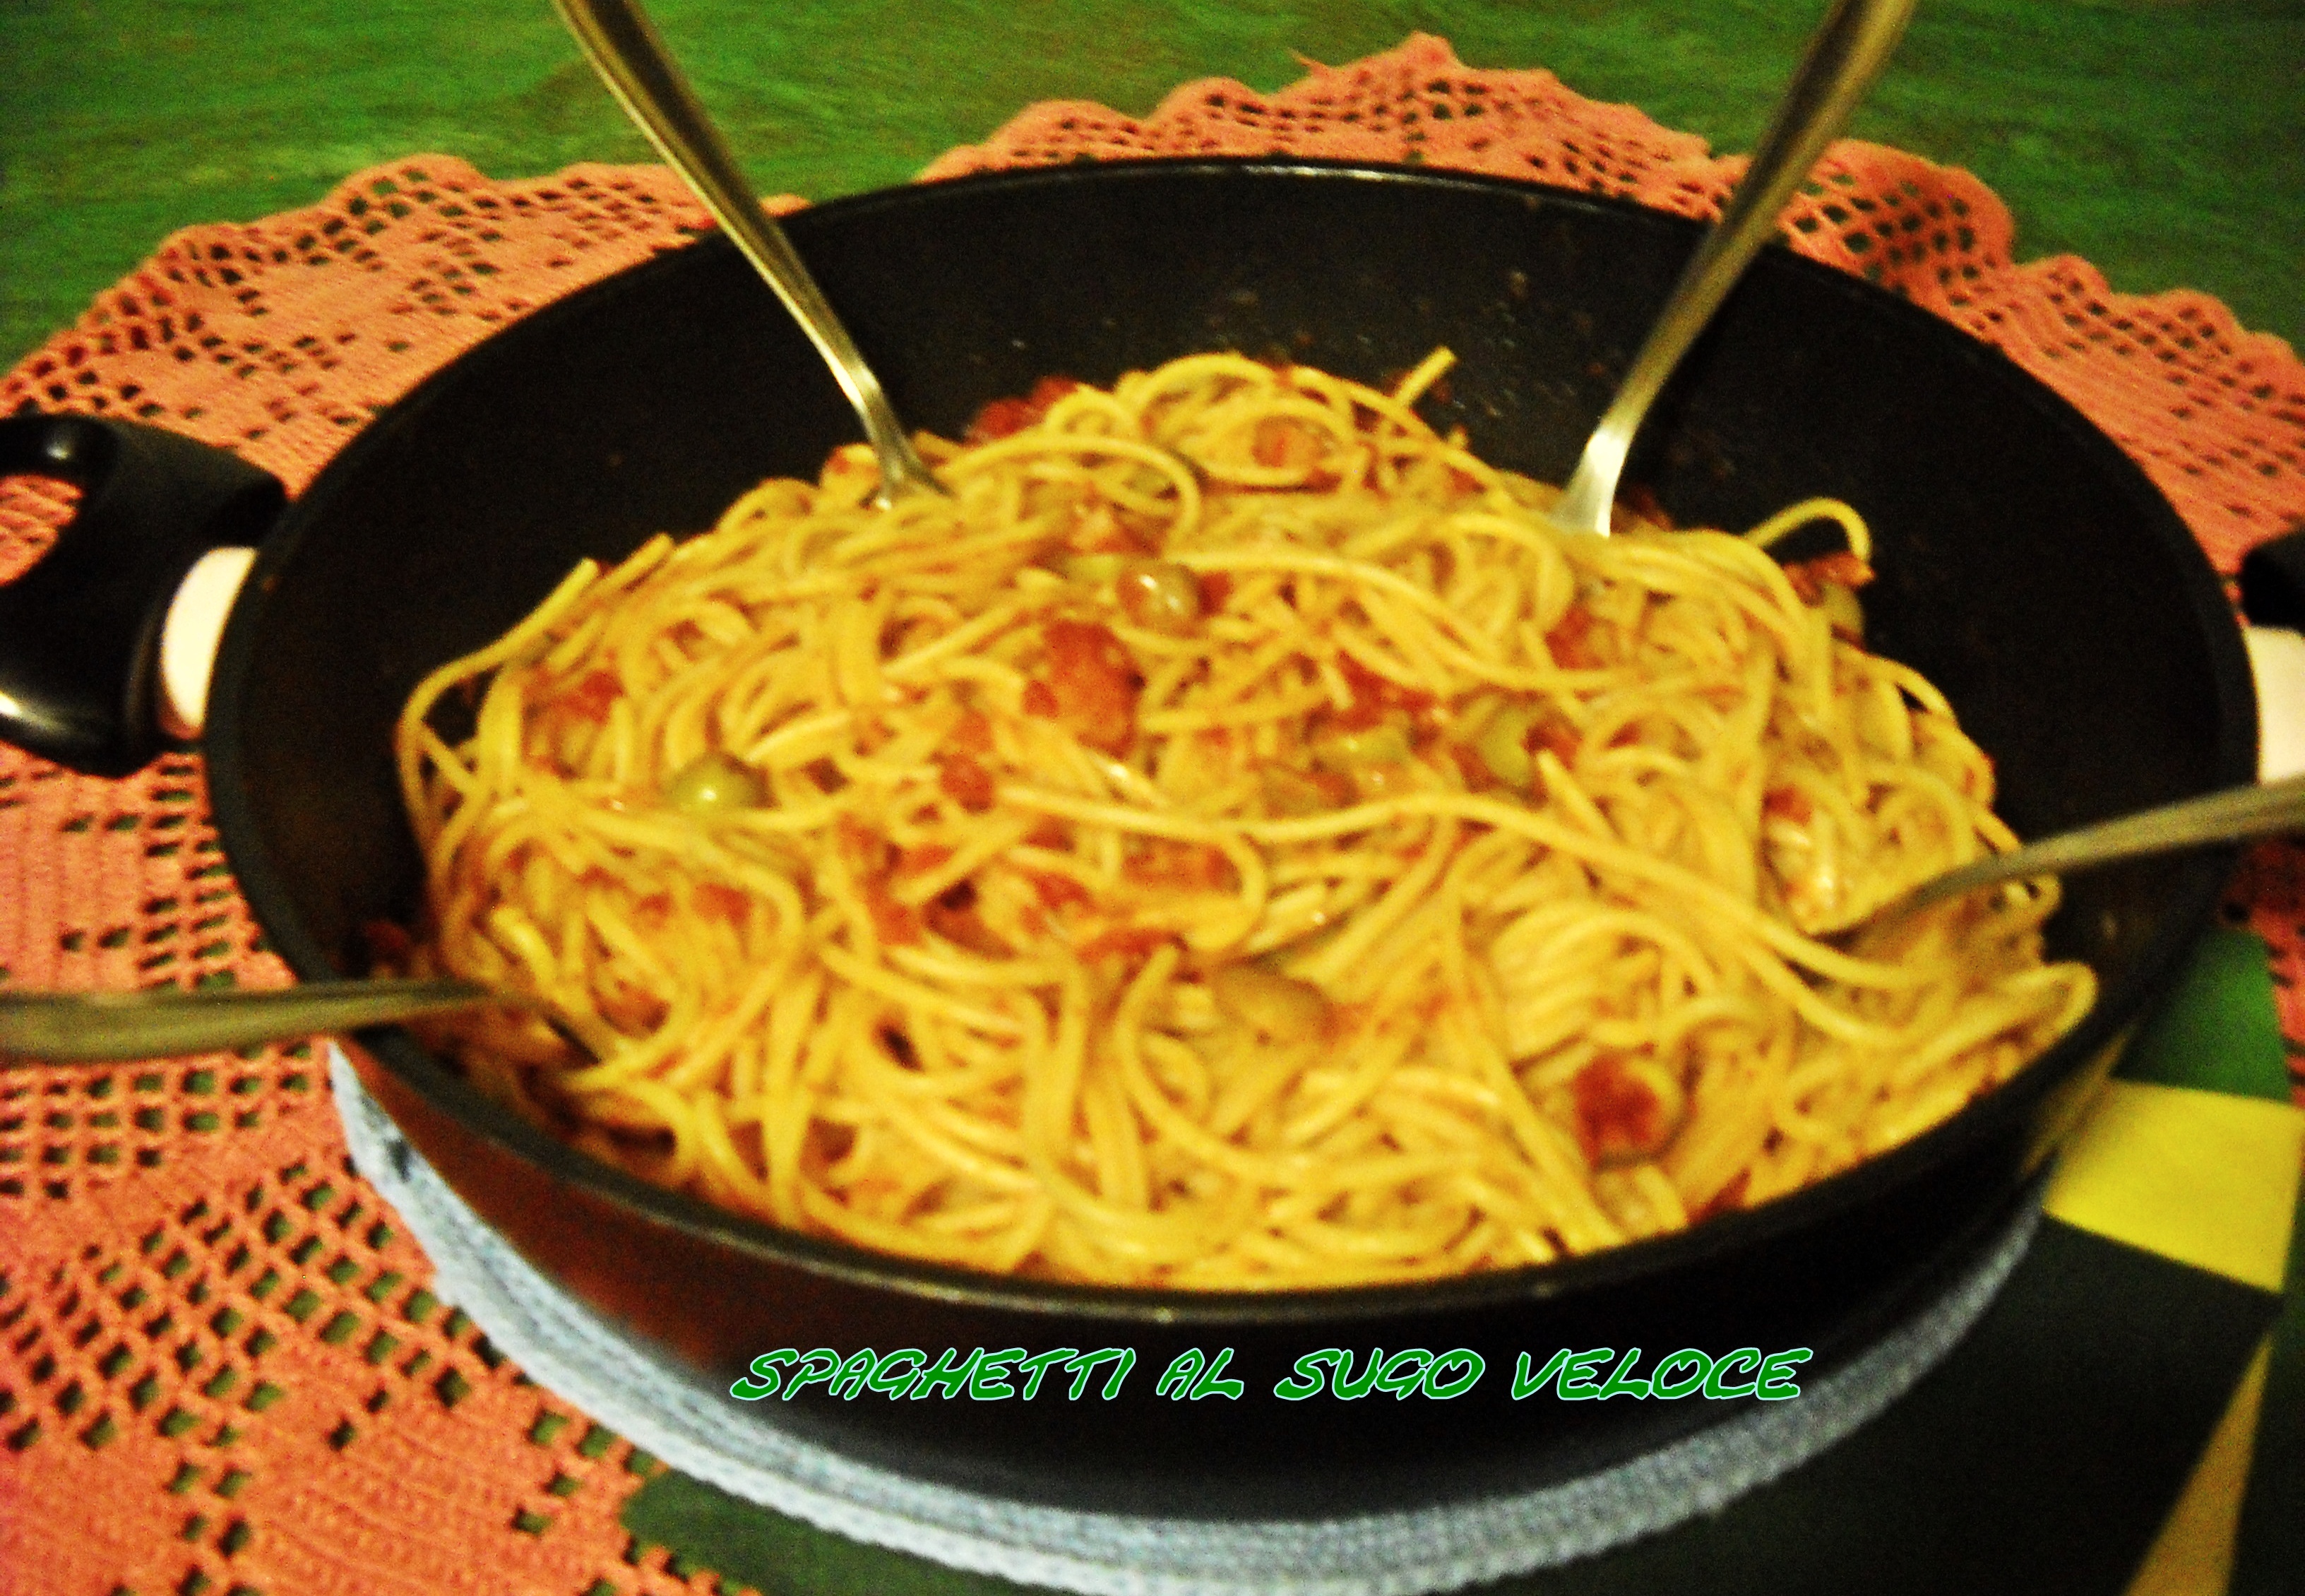 Spaghetti al sugo veloce